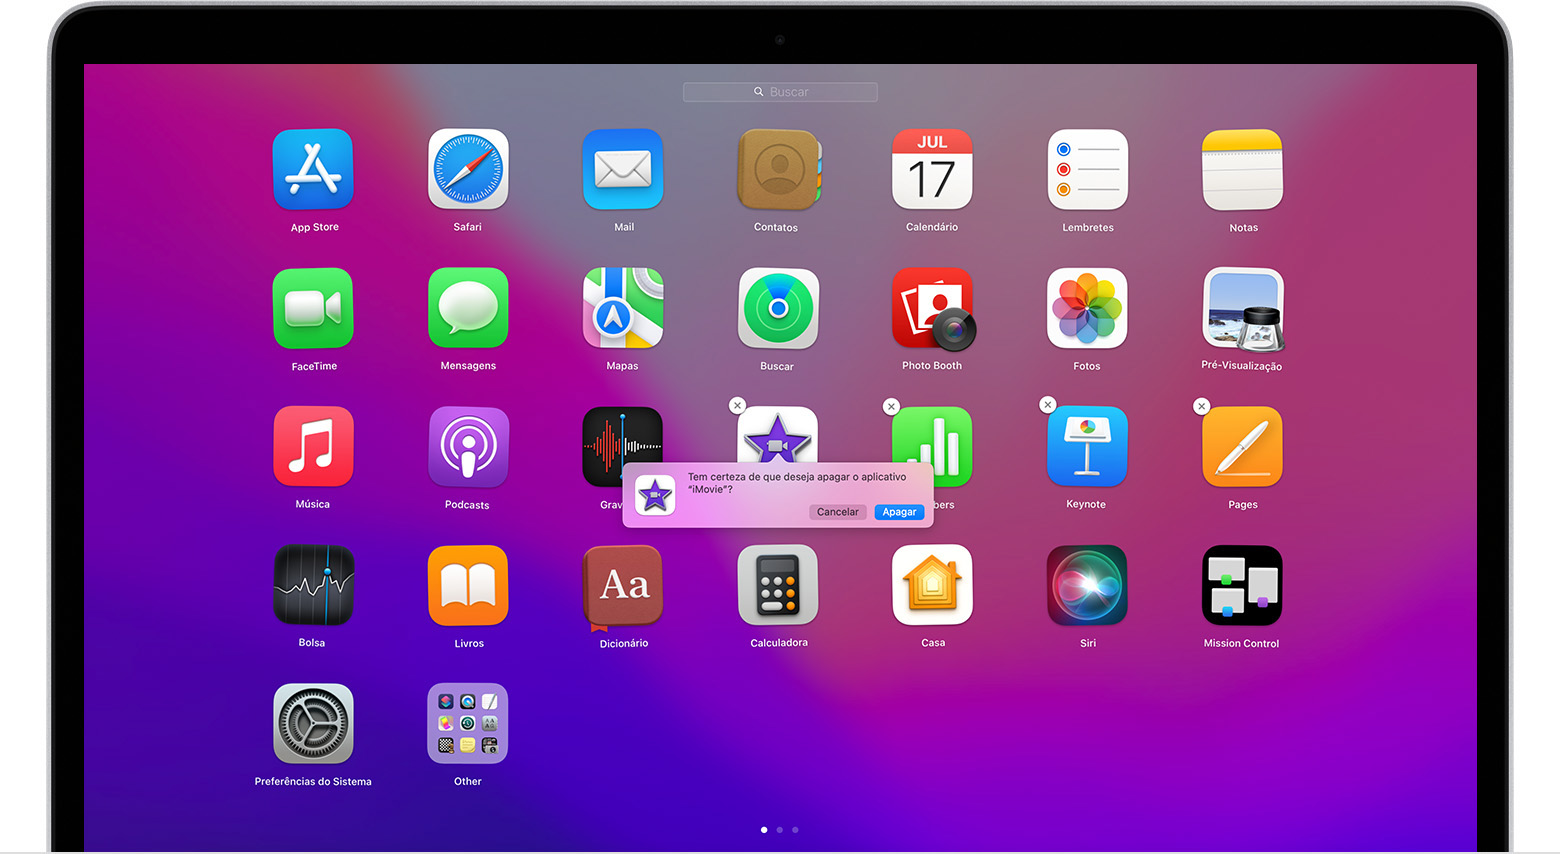 Tela do Launchpad no macOS mostrando as opções de confirmação de exclusão do app